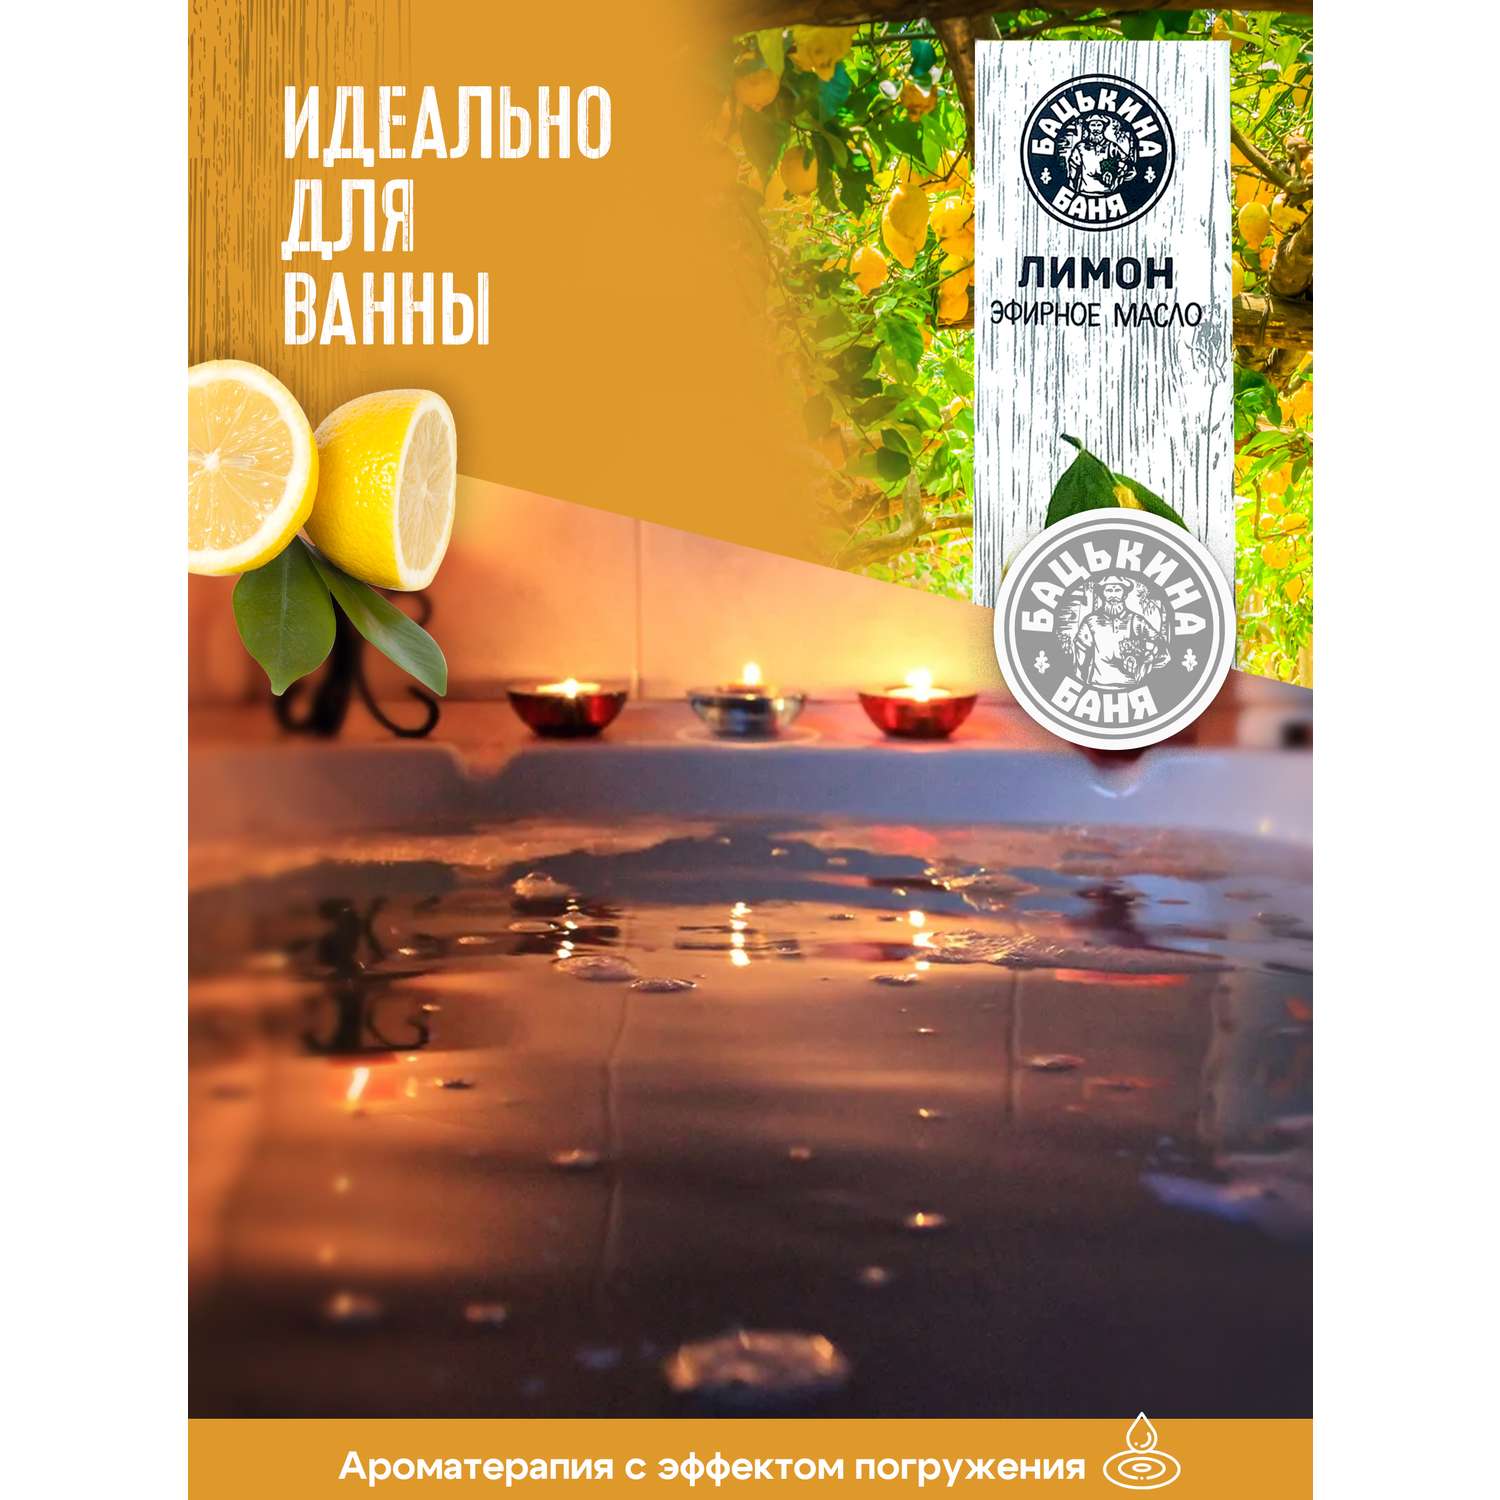 Эфирное масло Бацькина баня Лимон 10 мл - фото 7